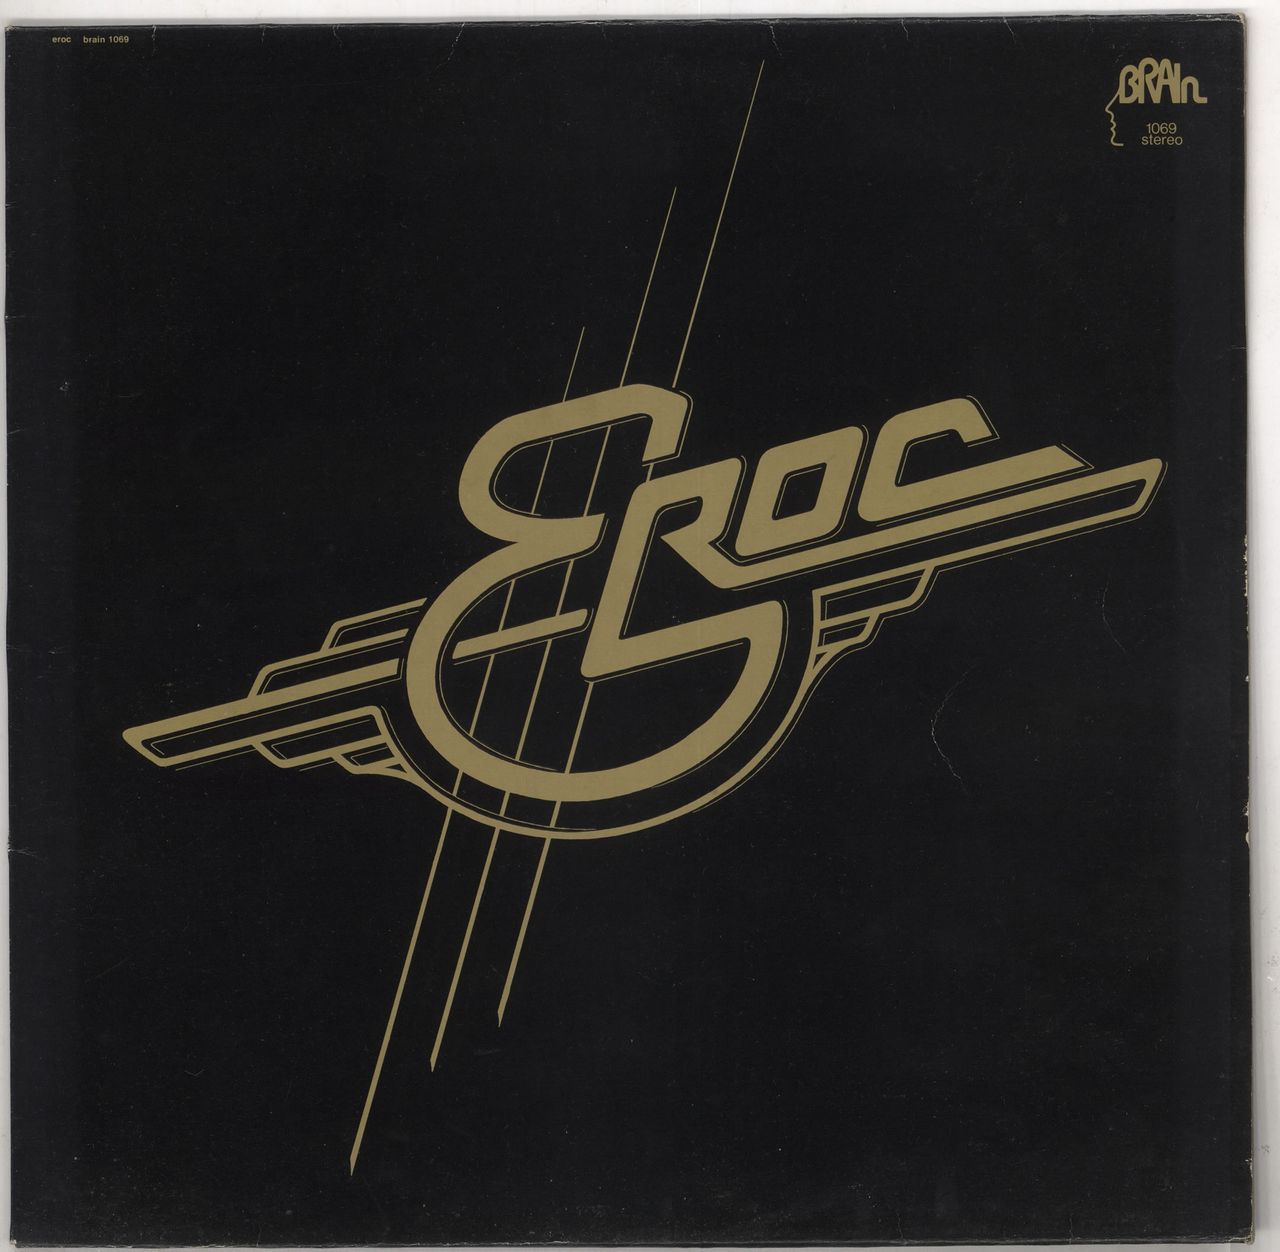 Eroc Eroc German vinyl LP album (LP record) BRAIN1069